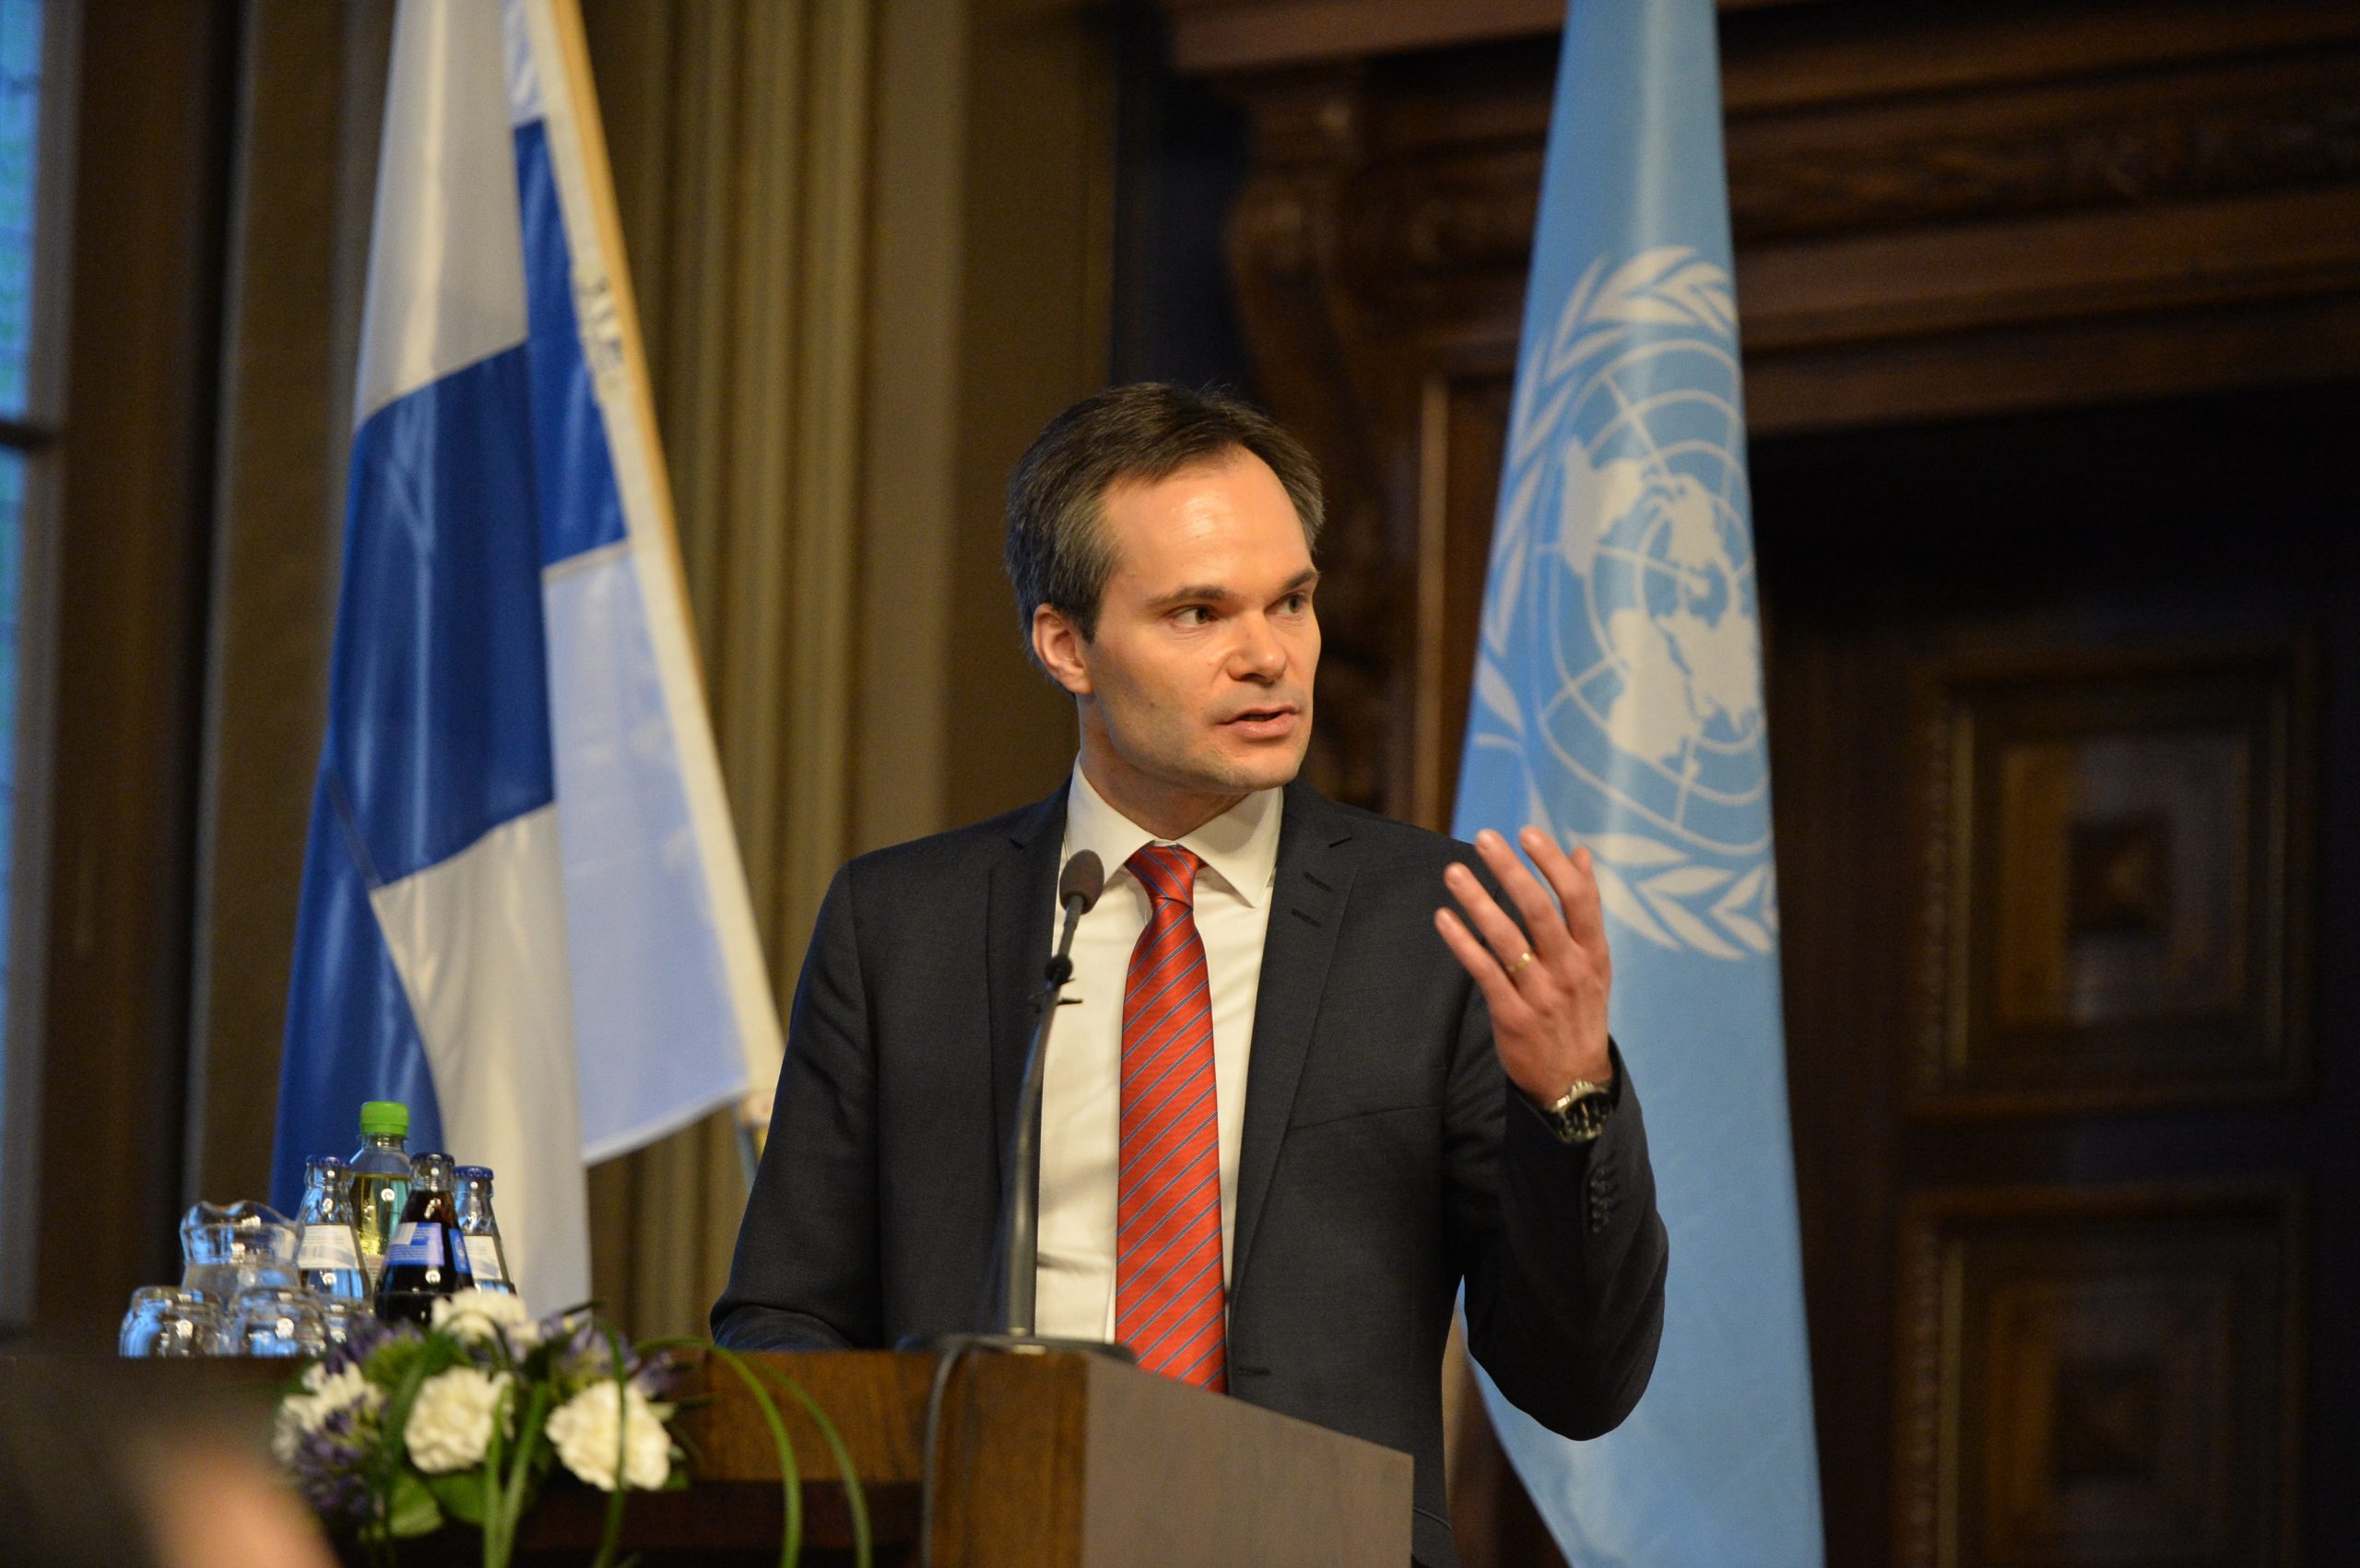 Kehitysministeri Kai Mykkänen vuonna 2017 Helsingissä.